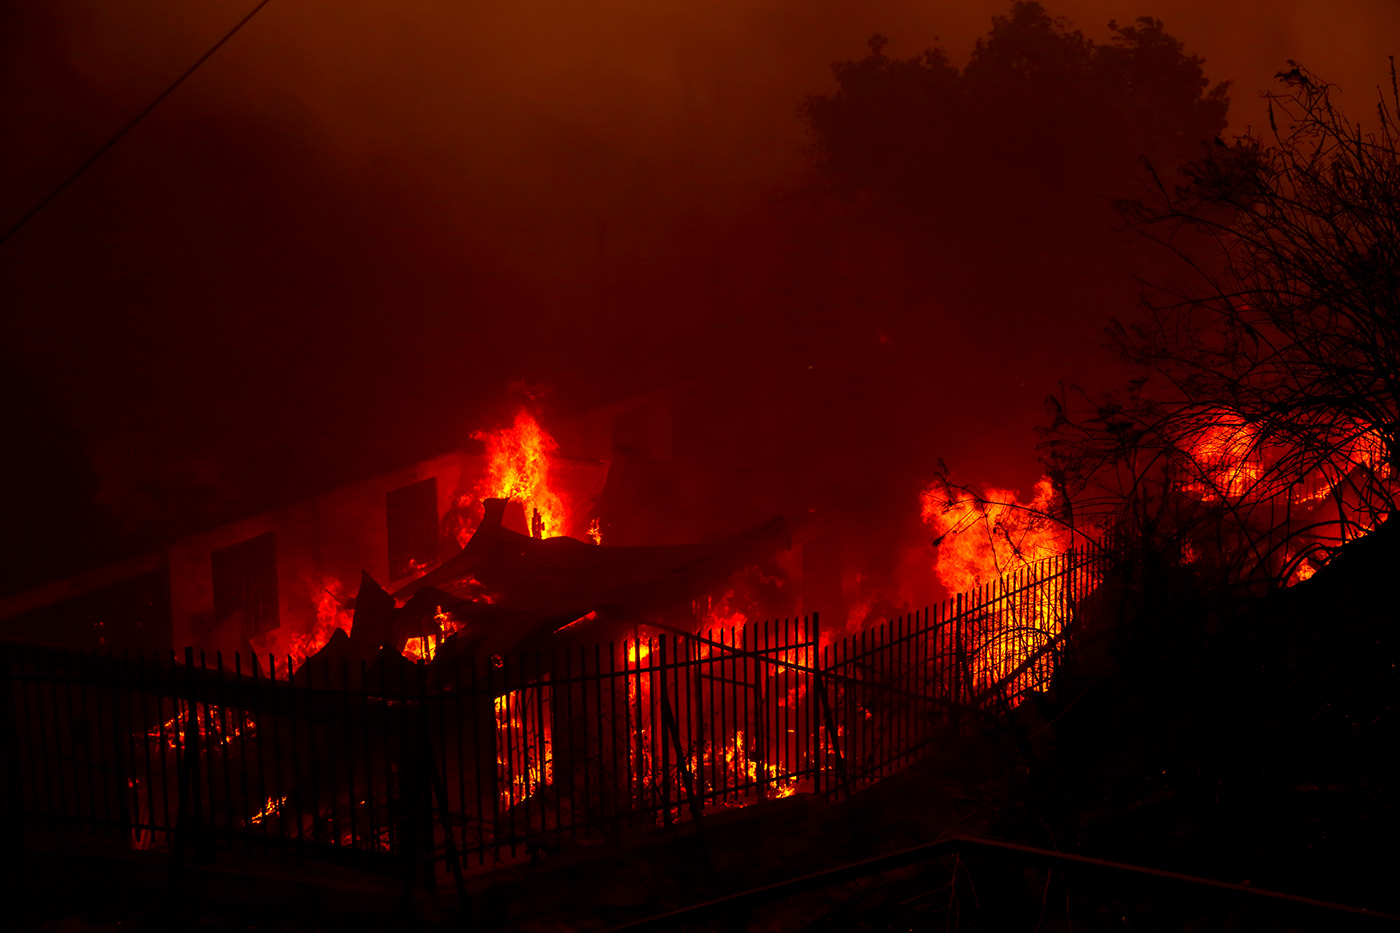 incendio valparaiso chile Fotoperiodismo documental Incendios forestales fuego Catastrofe desastres viña del mar